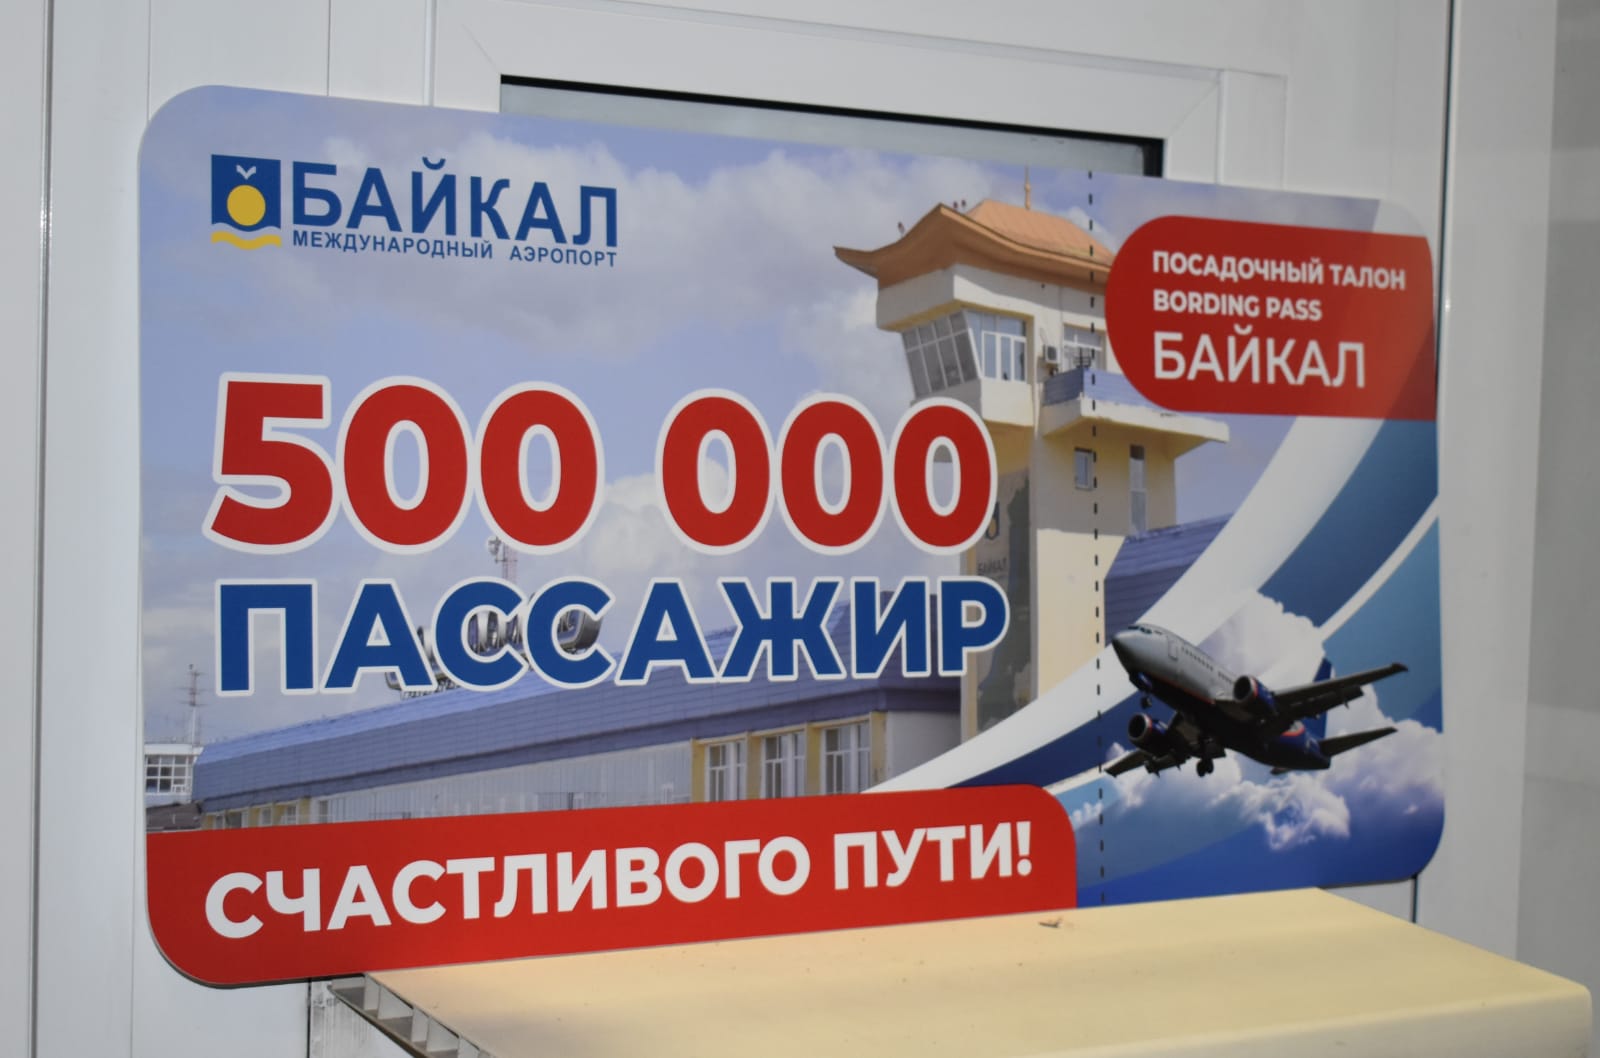 Аэропорт Байкал лого. Аэропорт Байкал Улан-Удэ логотип. Мозайка в аэропорту Байкал.